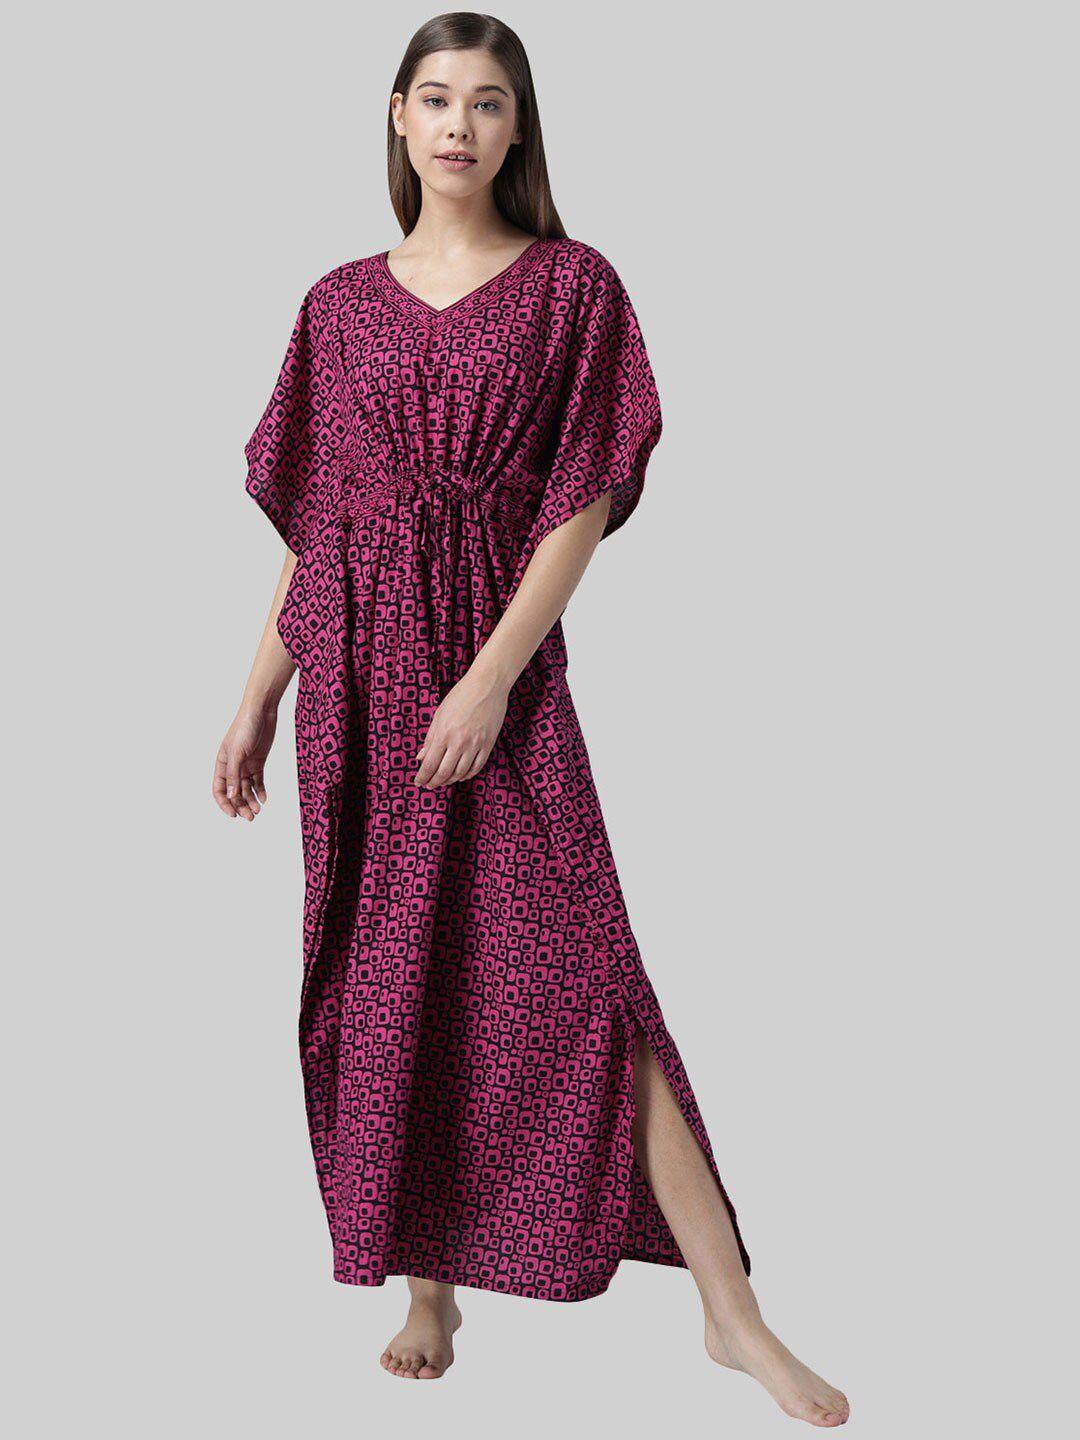 shararat-women-dark-pink-geometric-printed-maxi-kaftan-nightdress